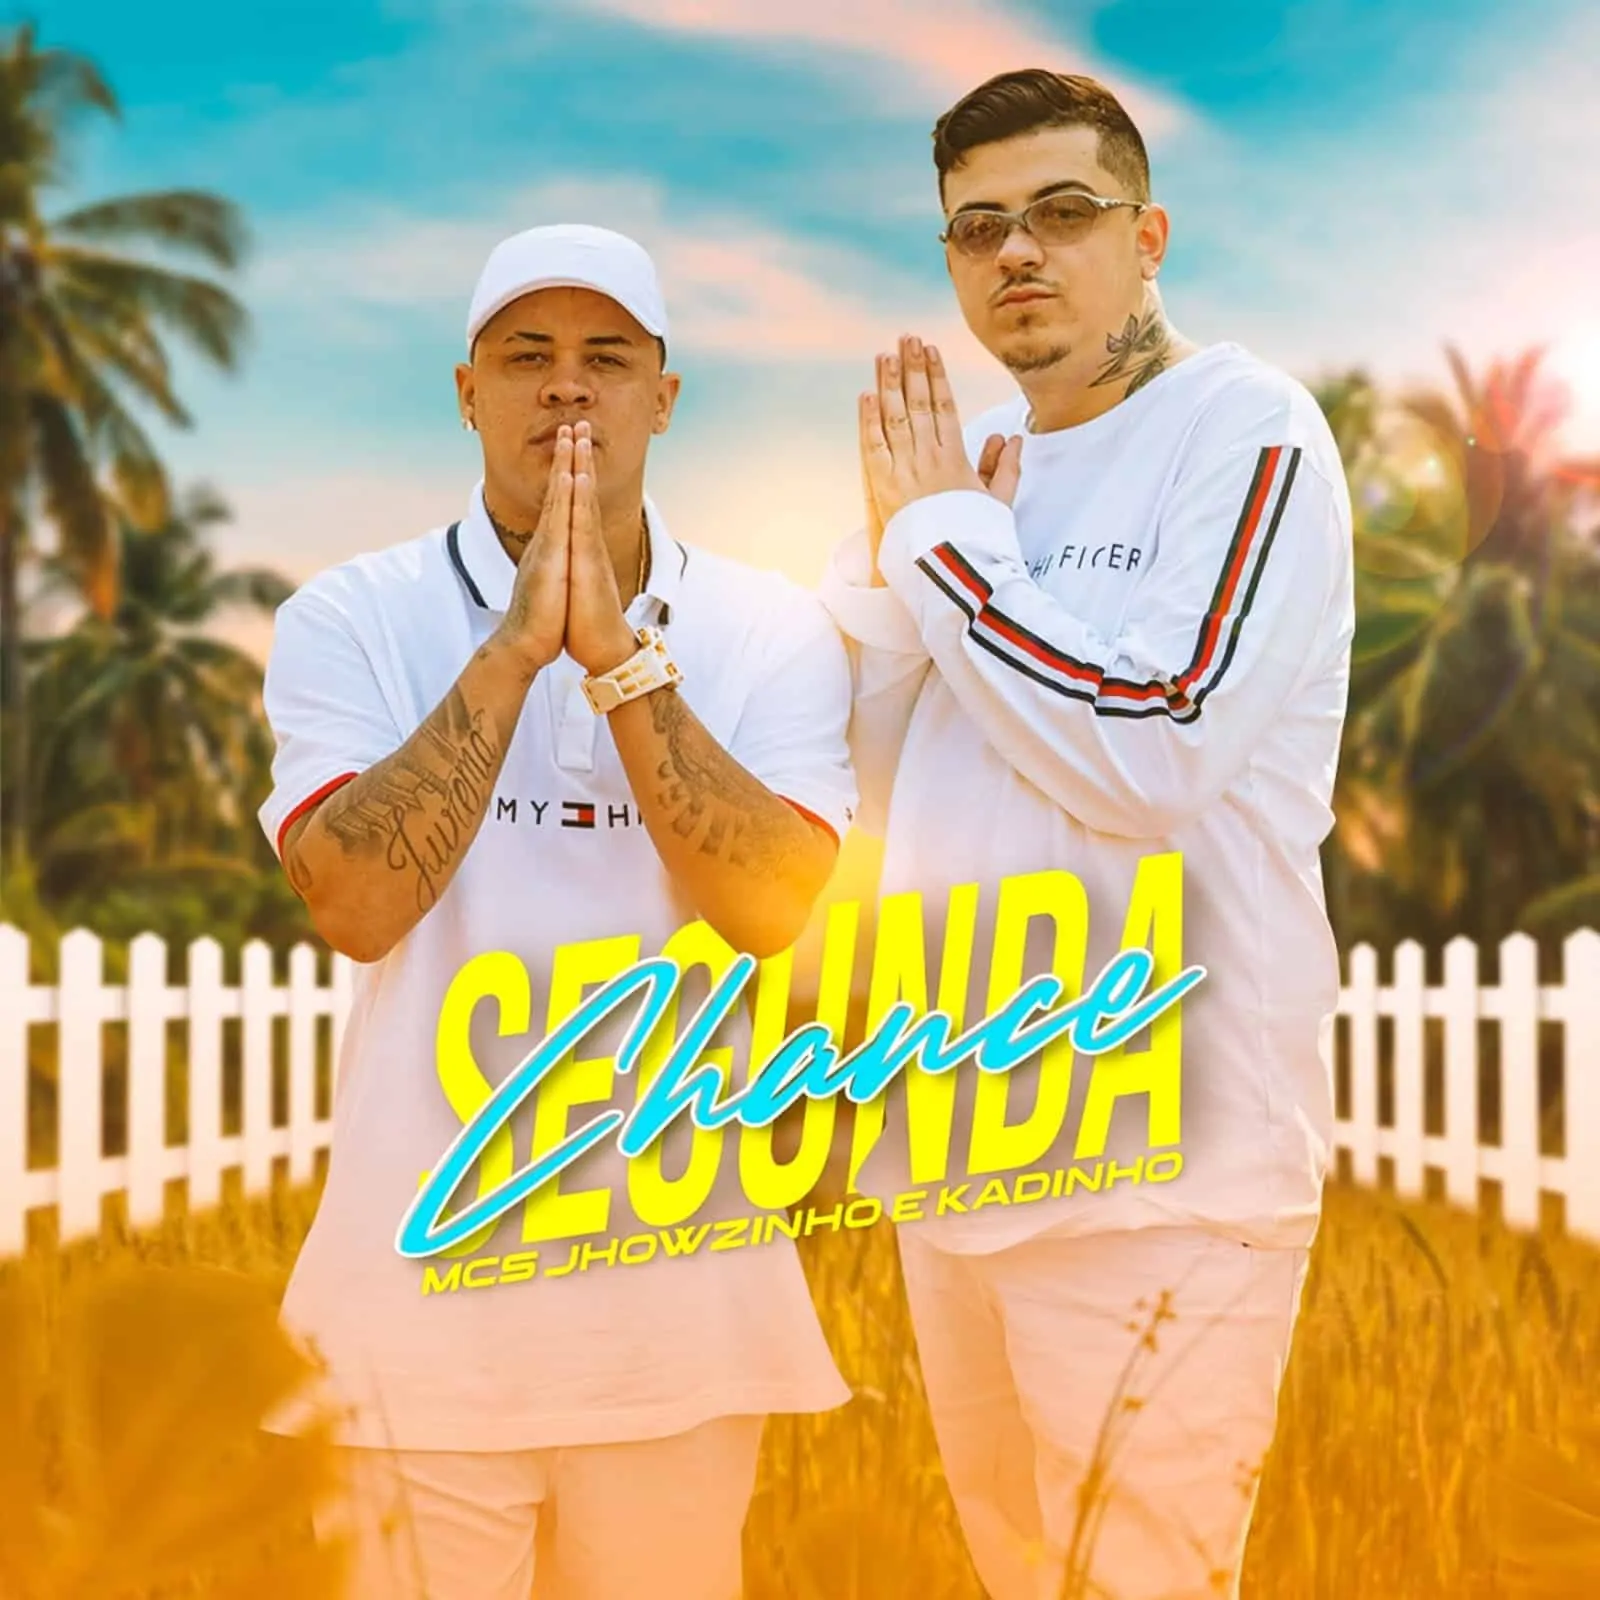 Jhowzinho e Kadinho lançam novo single “Segunda Chance”